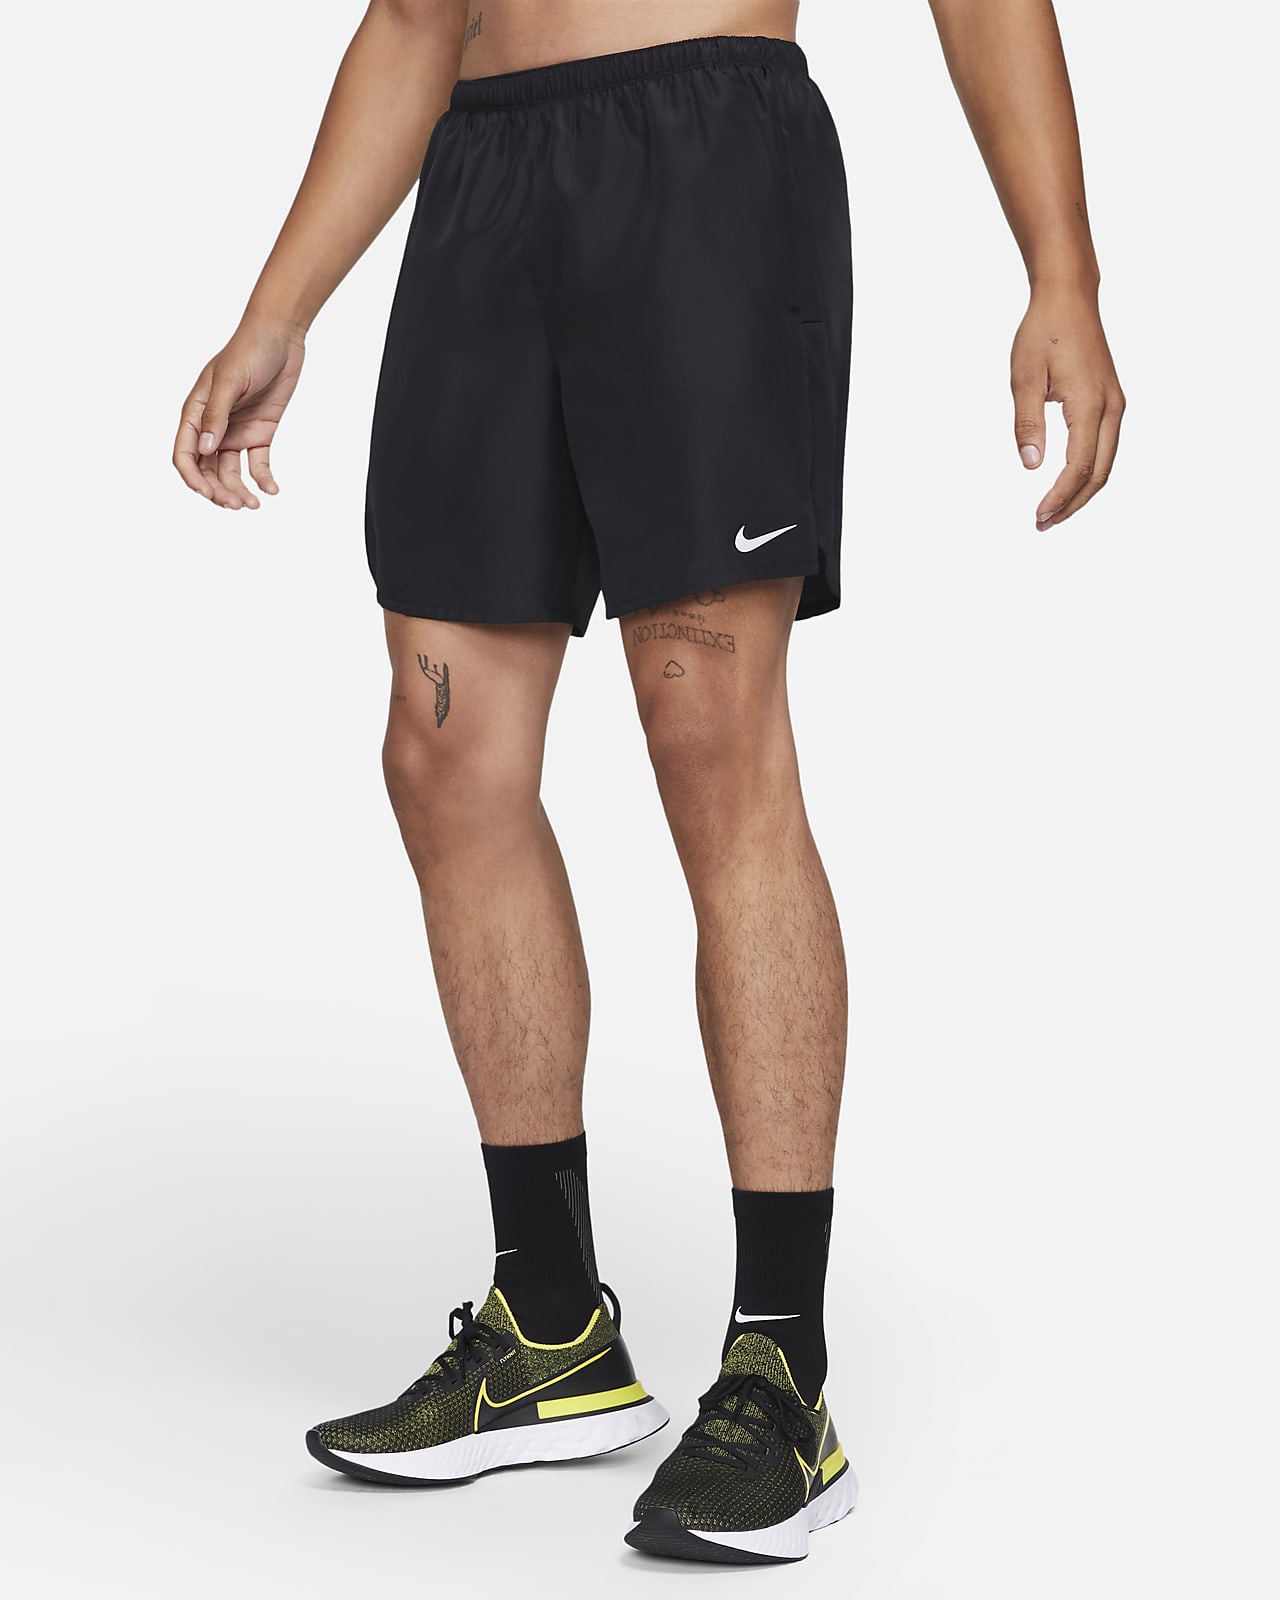 Löparshorts med innerbyxor Nike Challenger 18 cm för män